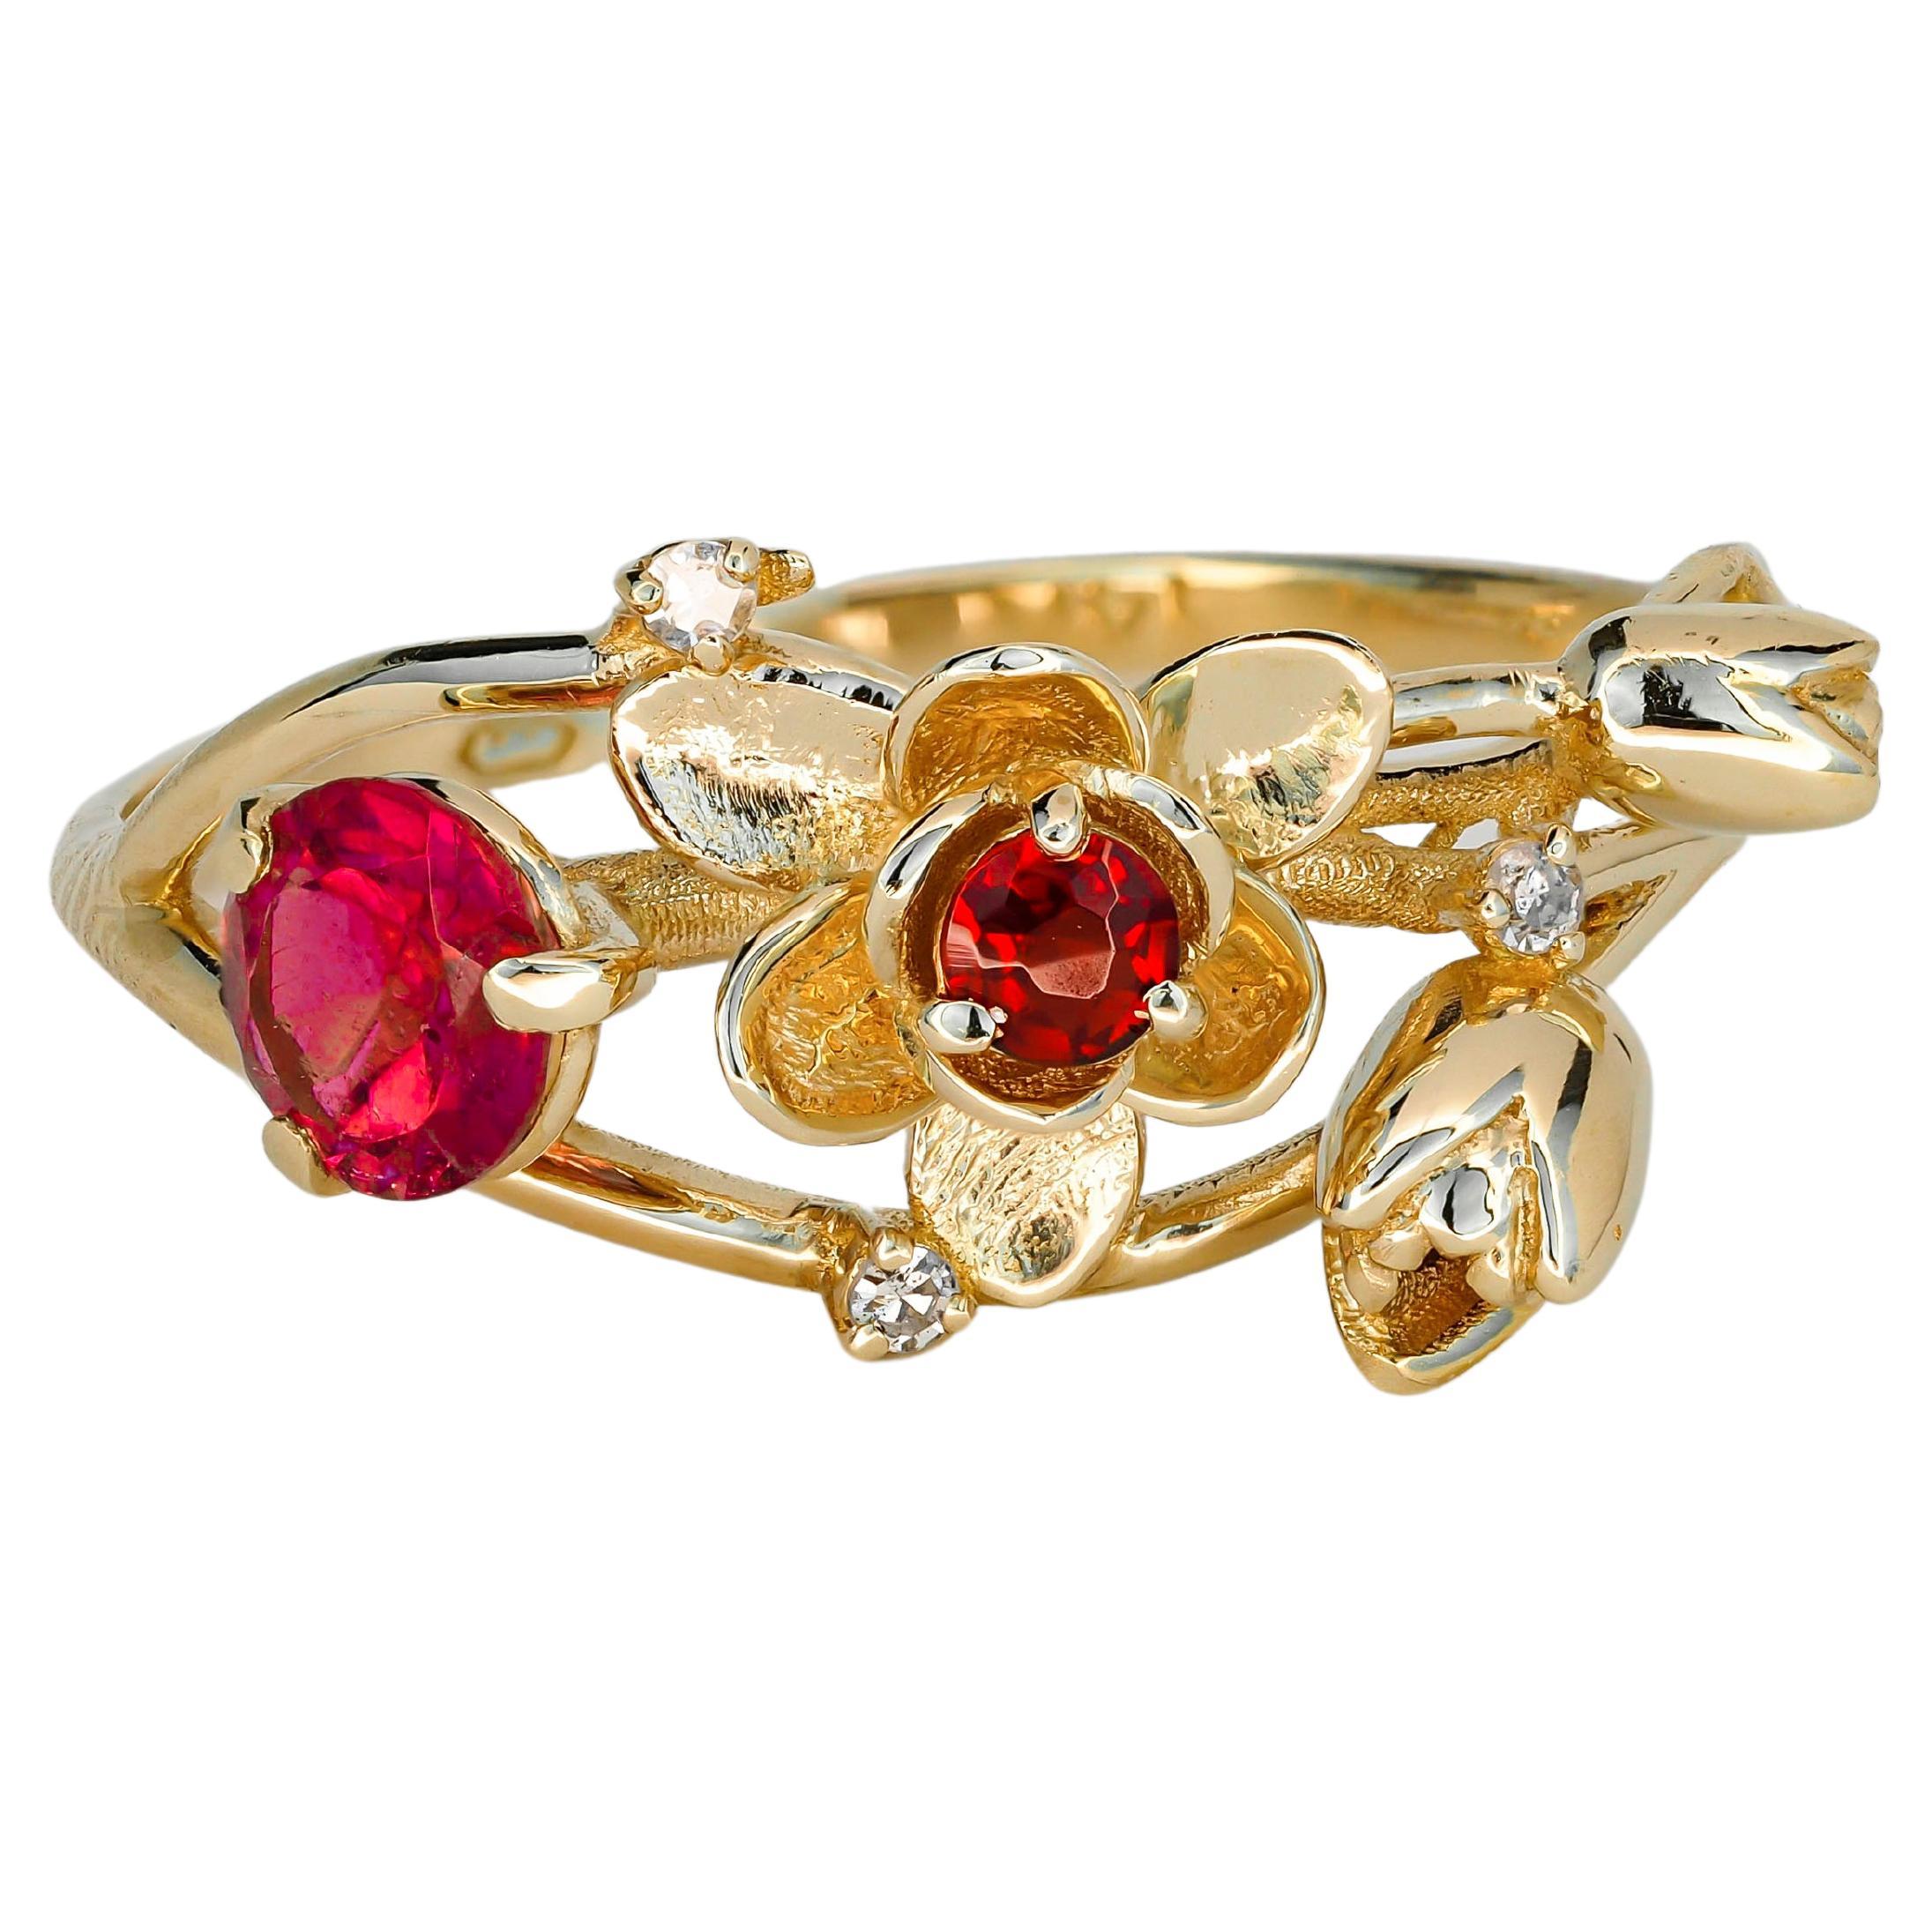 Rubin-Rubinring. 14k Gold Ring mit Rubin, Granat und Diamanten. Orchidee-Blumenring.